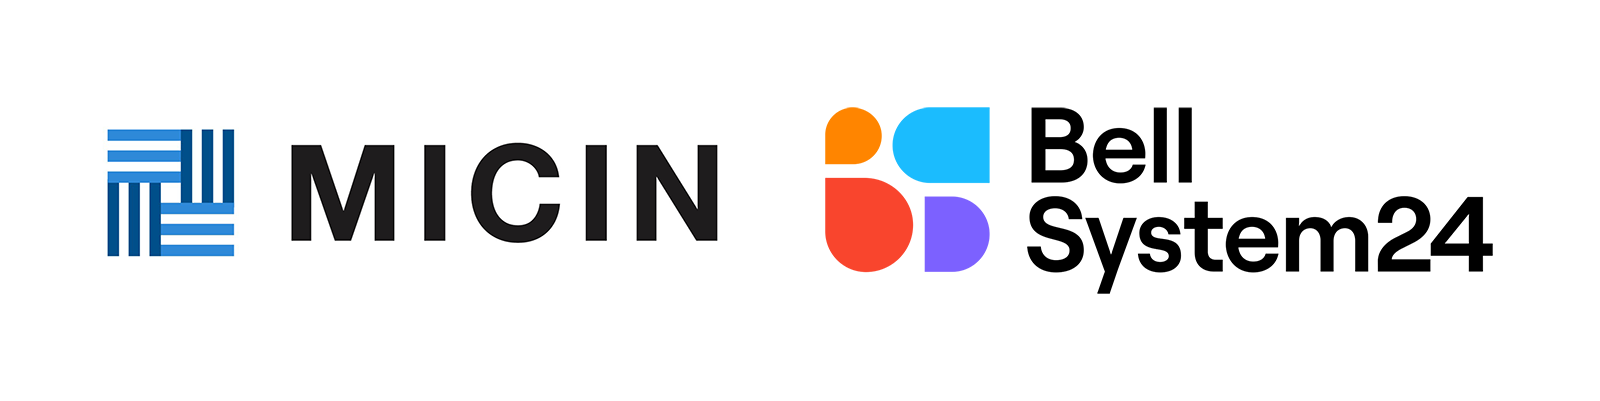 MICIN/ベルシステム24 ロゴ